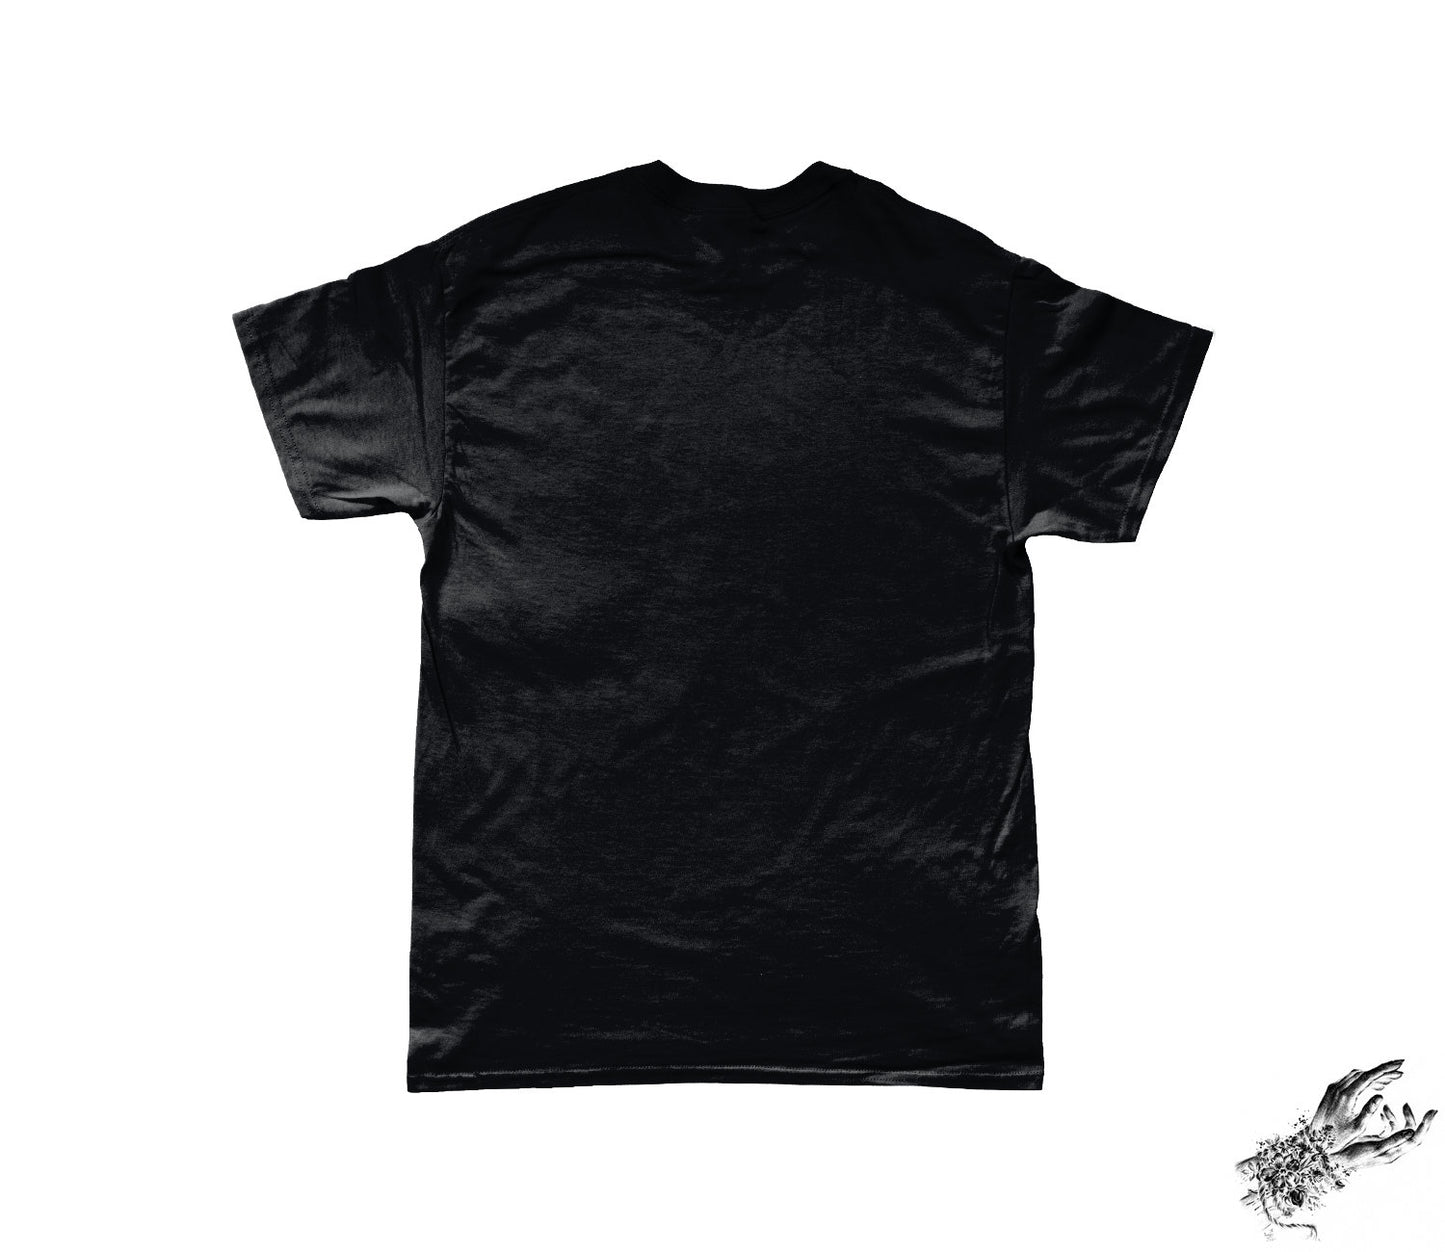 Black Baphomet and Skulls T-Shirt